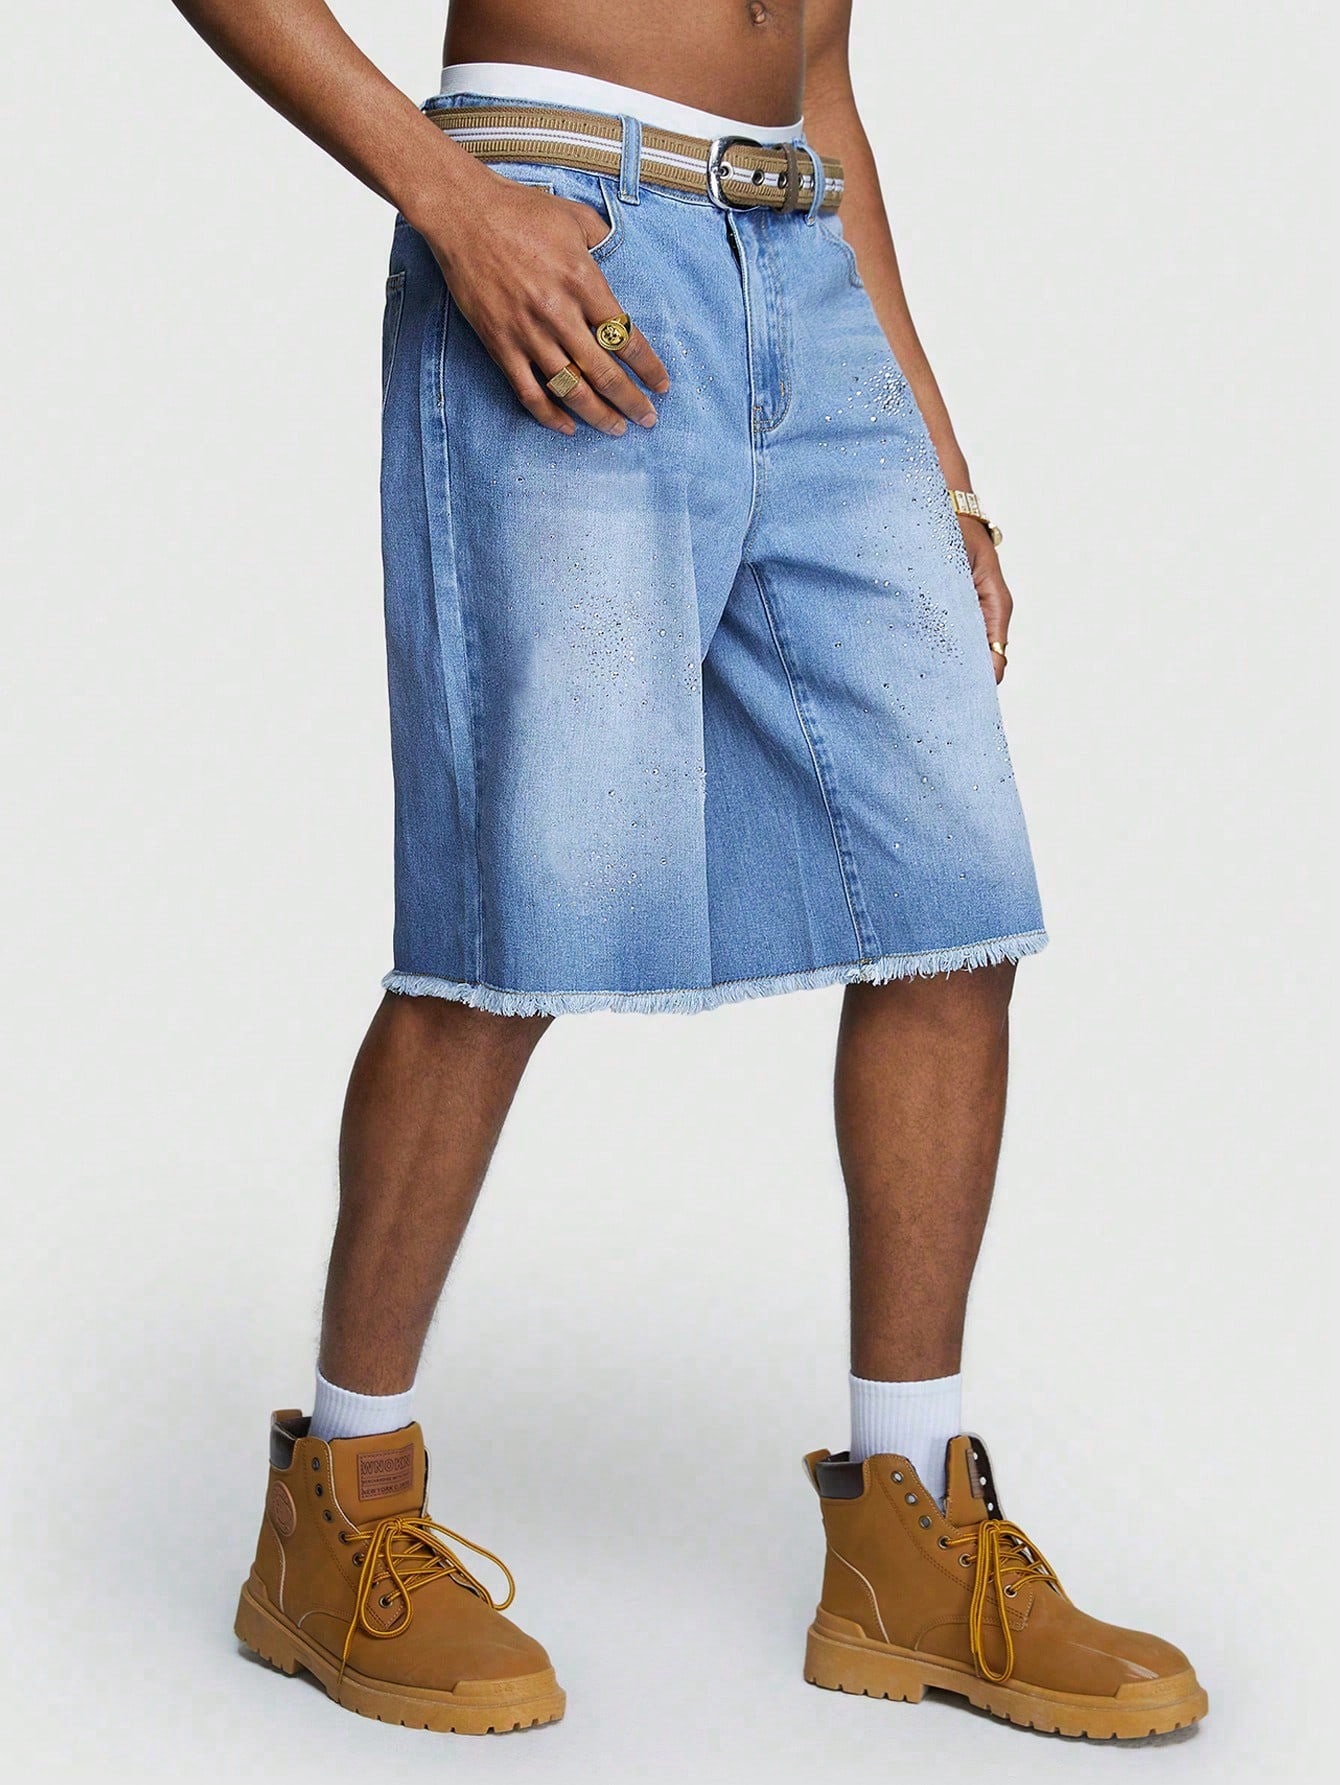 Мужские джинсы ROMWE Street Life с потертым краем и карманами, синий